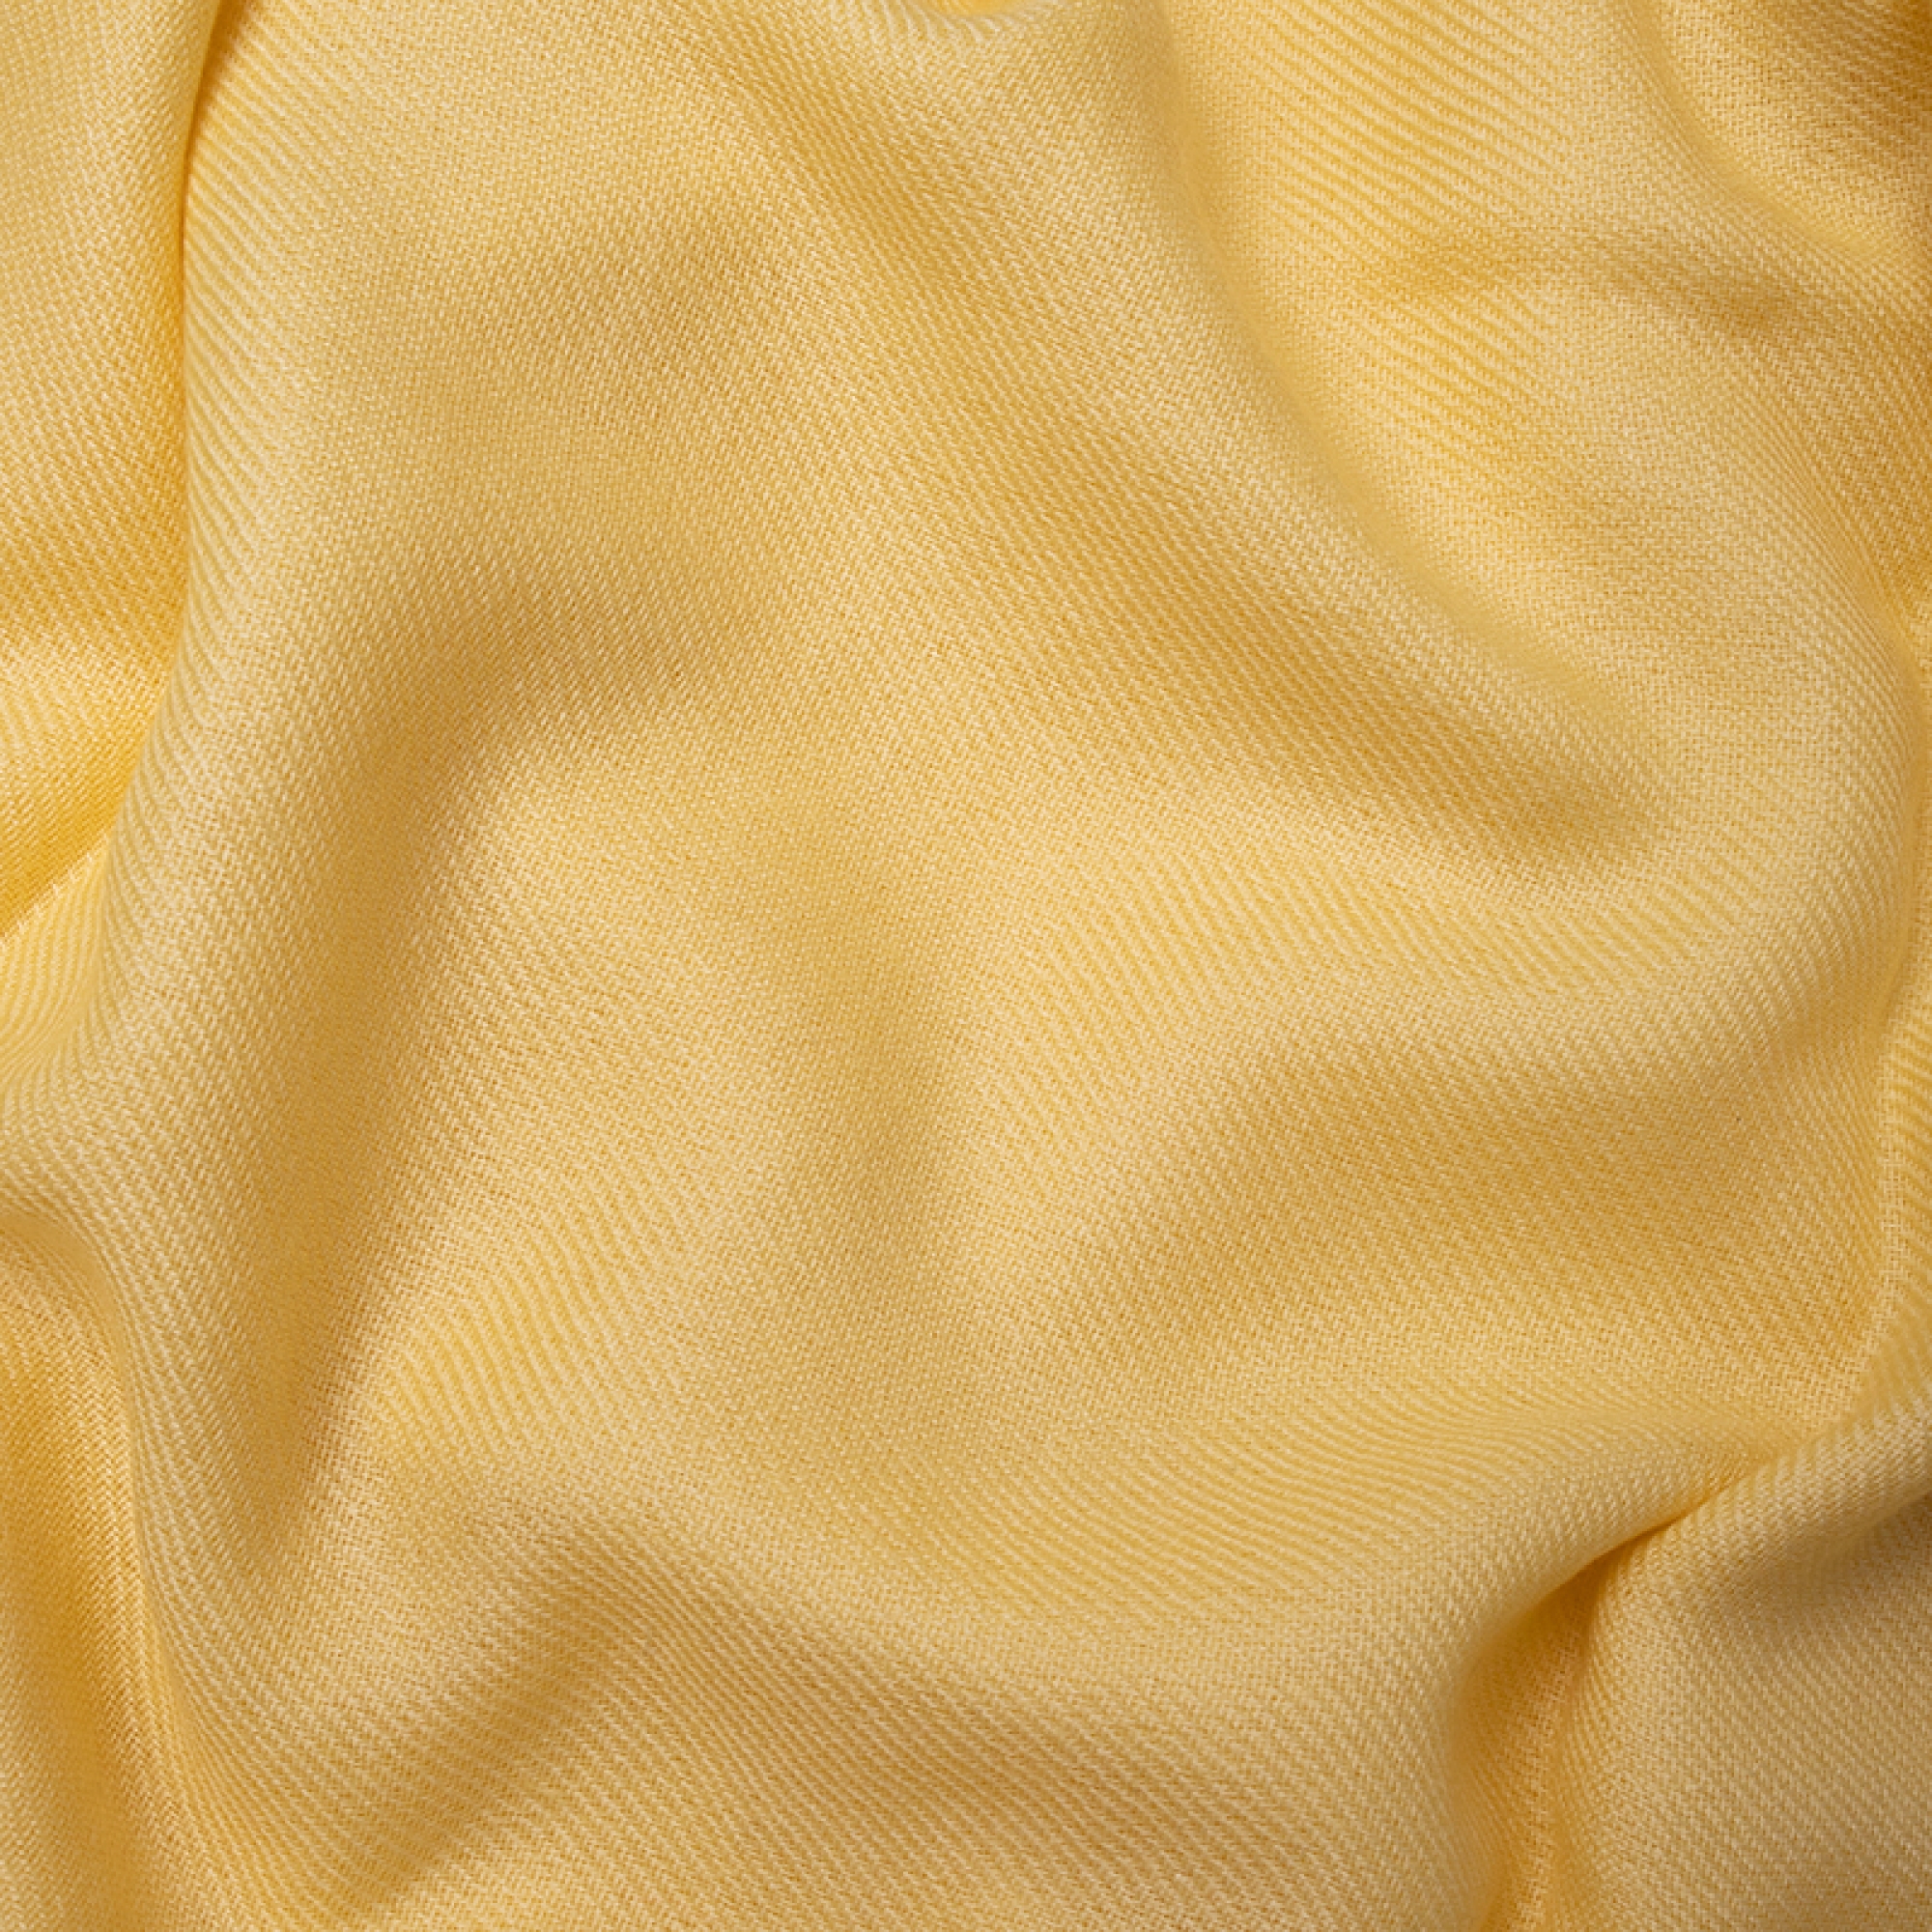 Cachemire pull femme toodoo plain m 180 x 220 jaune pastel 180 x 220 cm